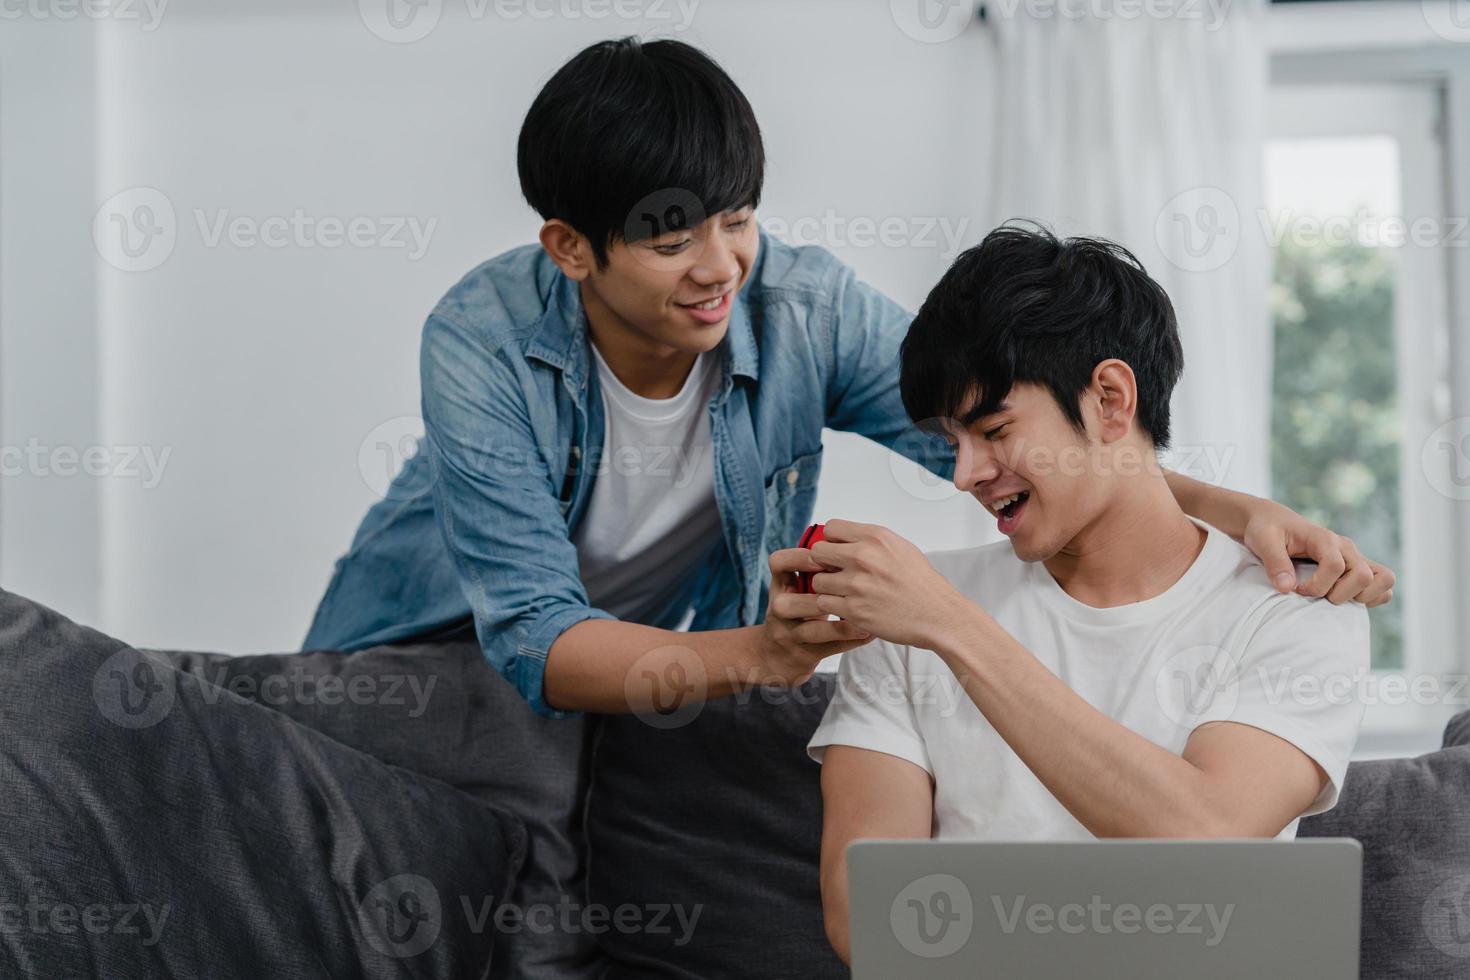 un jeune couple gay asiatique propose dans une maison moderne, des adolescents coréens lgbtq souriants heureux passent un moment romantique en proposant et une surprise de mariage porte une bague de mariage dans le salon du concept de maison. photo